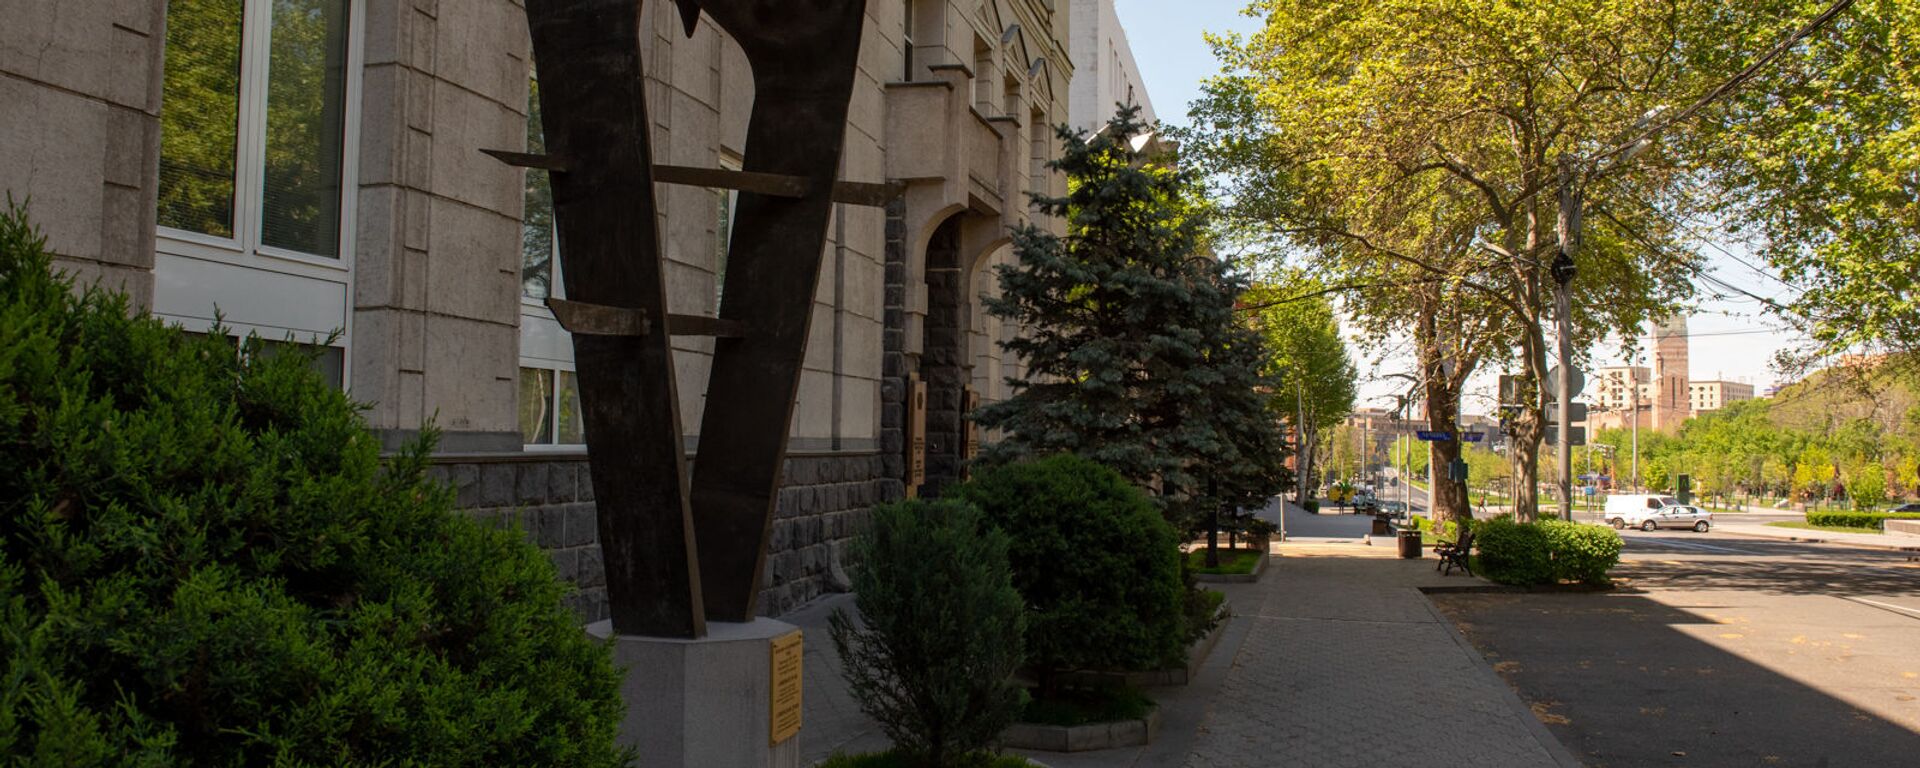 Скульптура армянскому драму перед зданием Центрального Банка Армении - Sputnik Армения, 1920, 14.12.2021